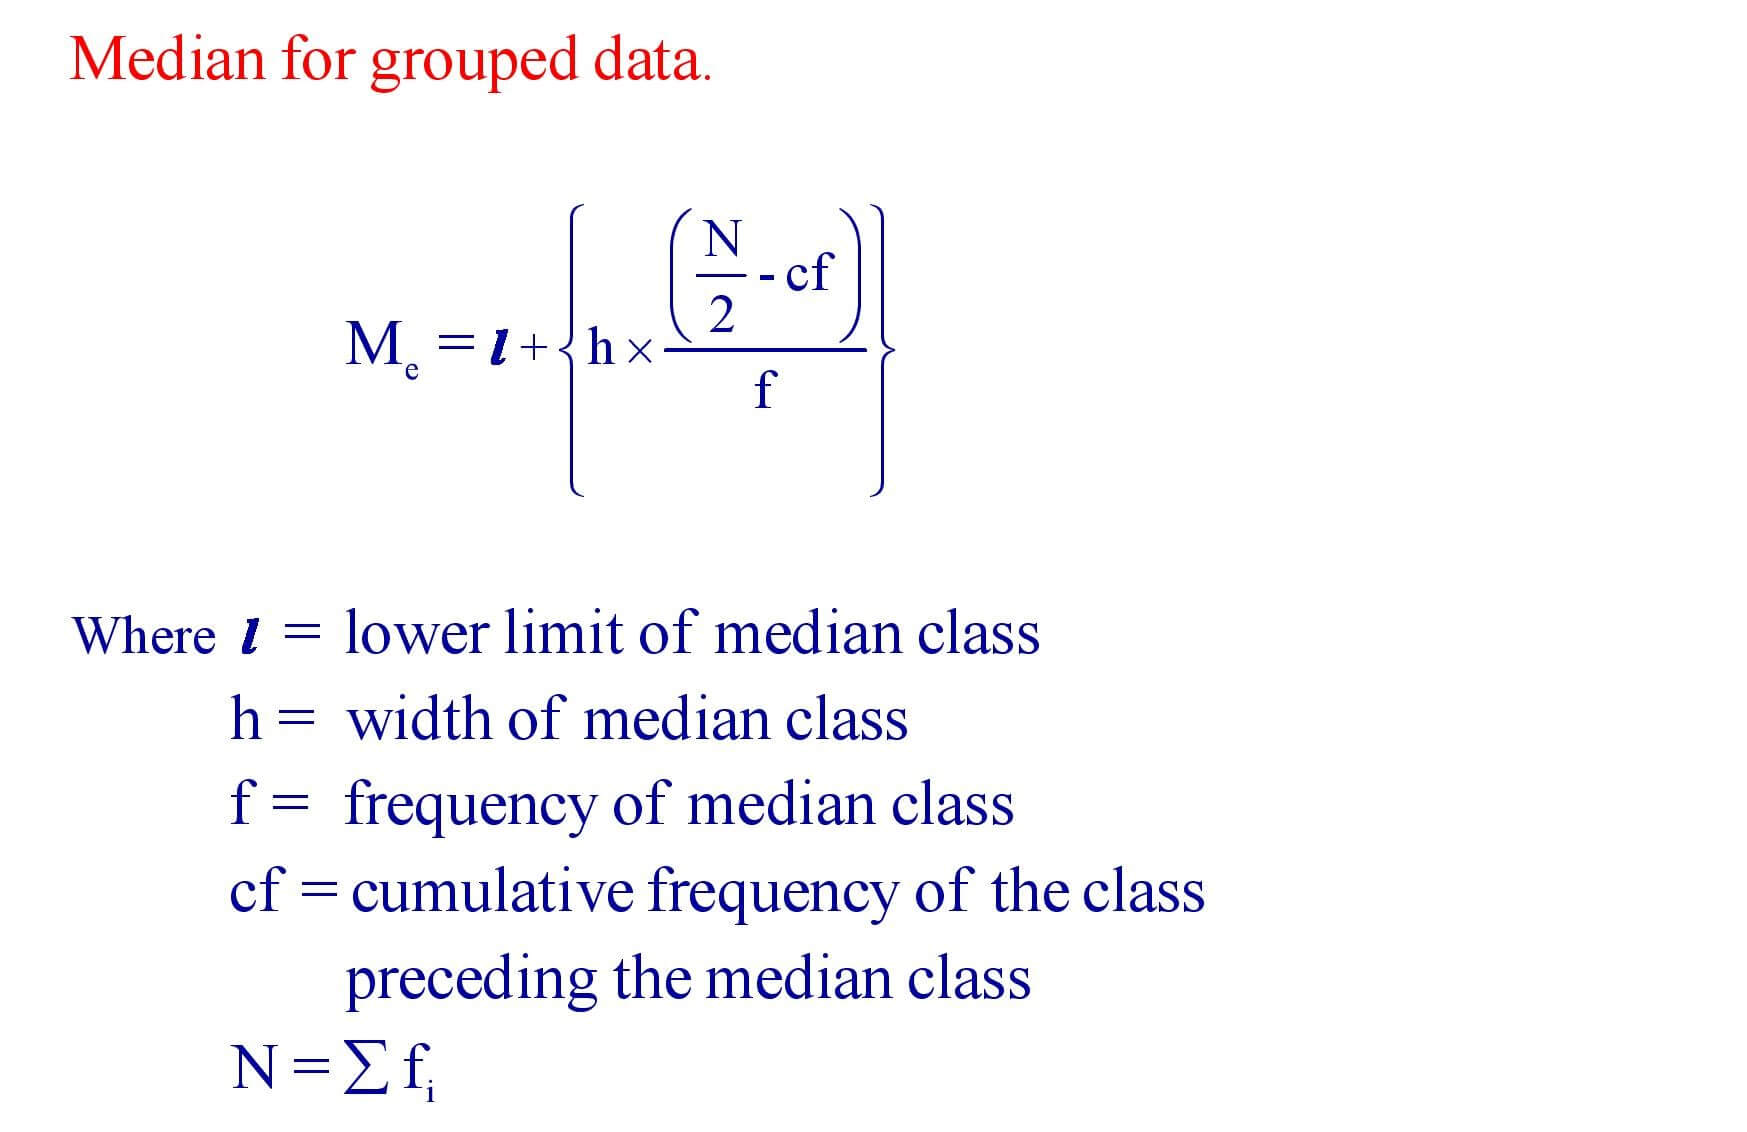 Median for grouped data formula